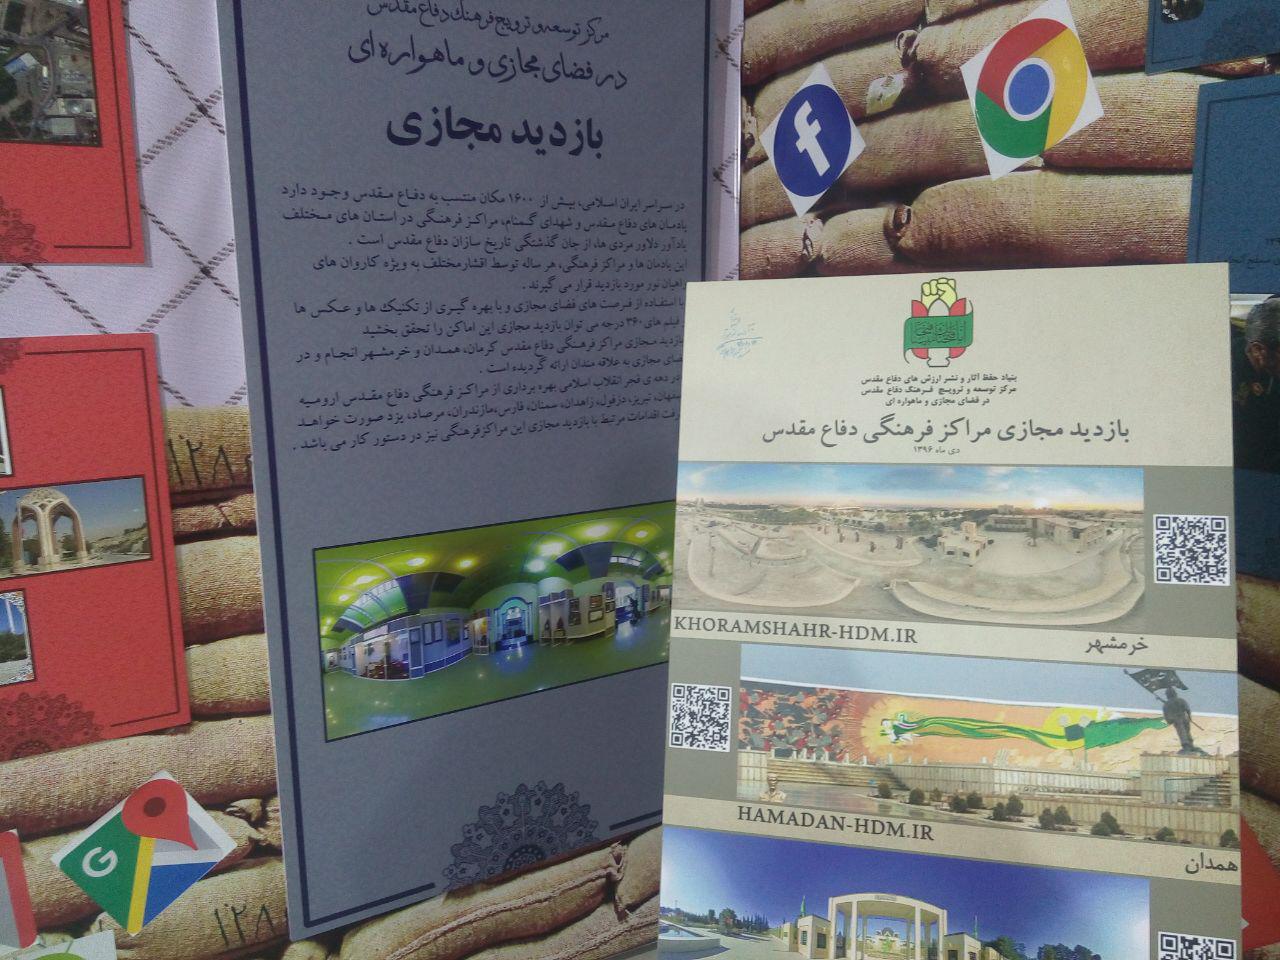 بازدید مجازی از مراکز فرهنگی دفاع مقدس خرمشهر، همدان و کرمان